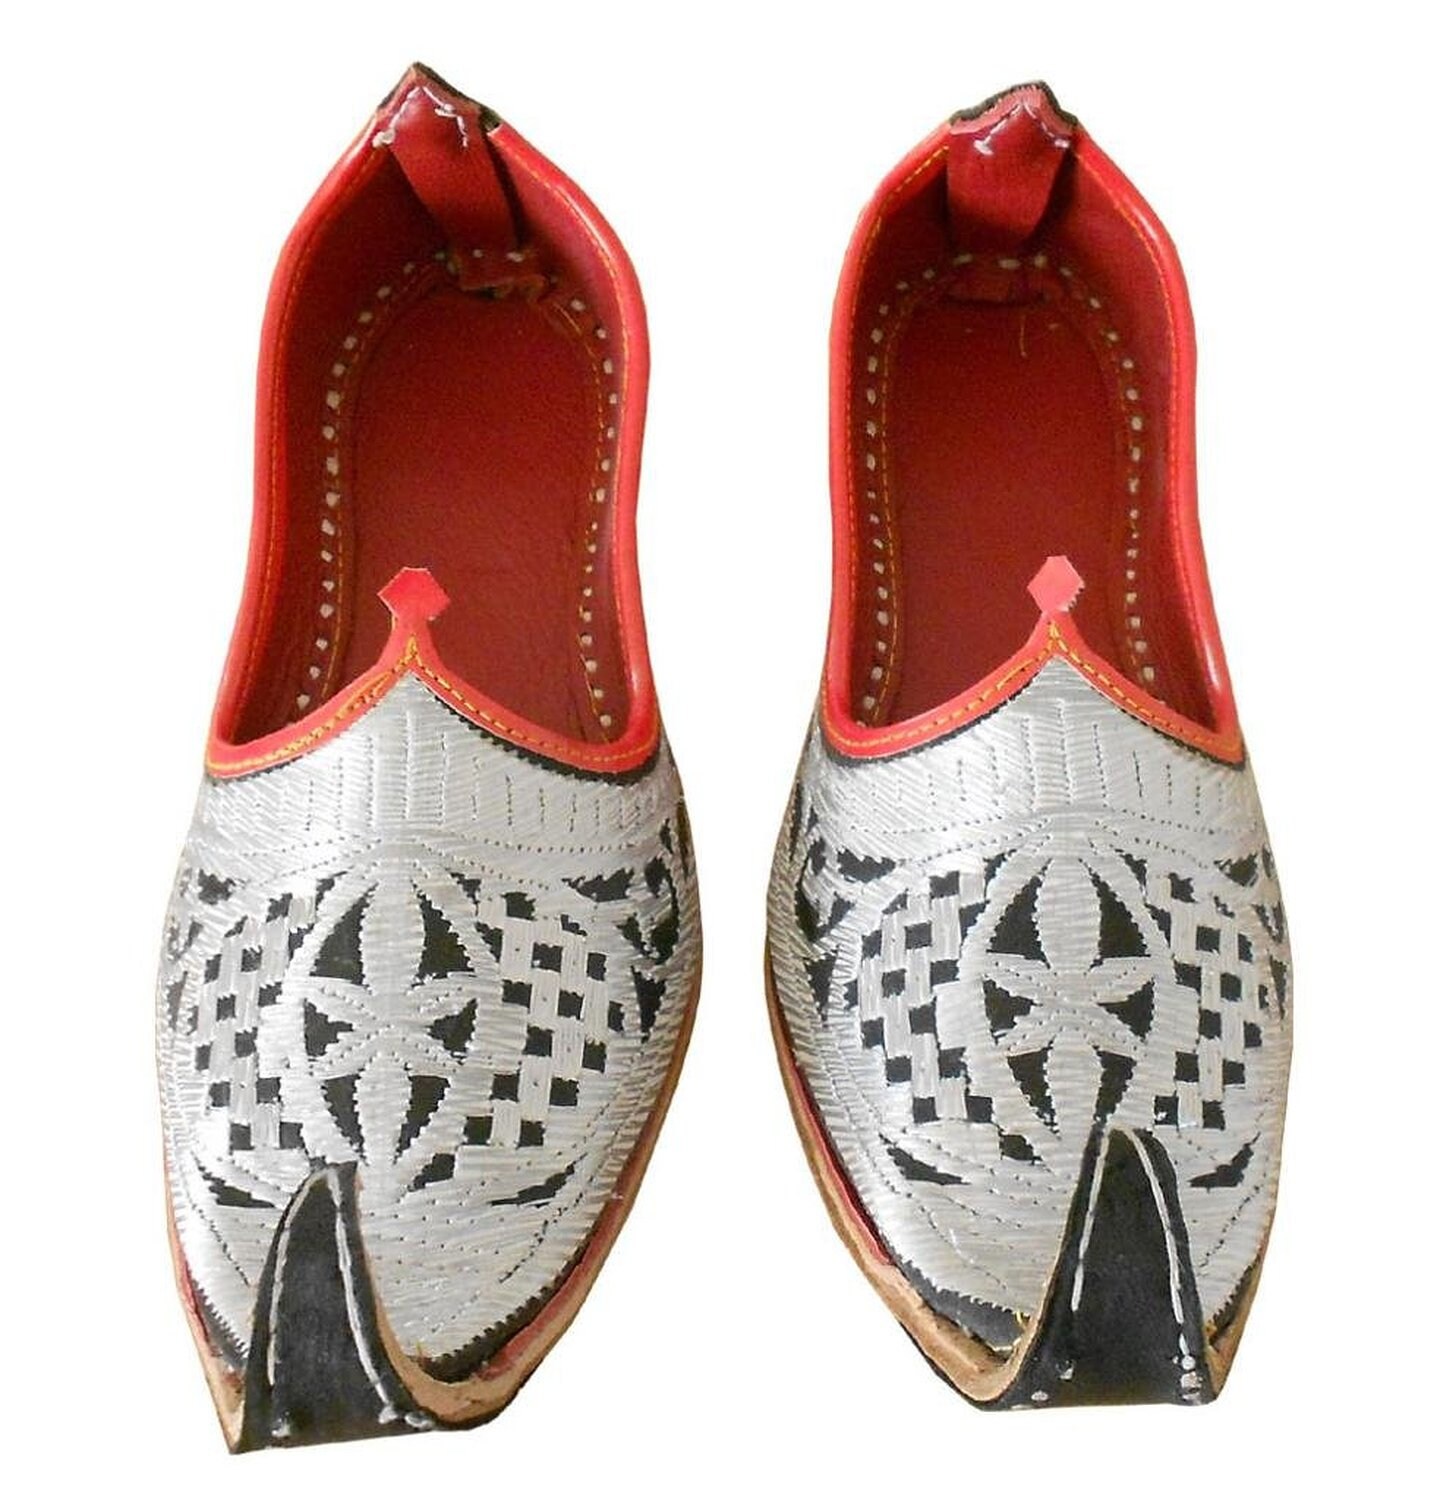 Schoenen Schoenen Herenschoenen Verkleden Indisch traditioneel bruin leer Mannen Mojadi Mojri traditionele Indiase Khussa Schoenen 